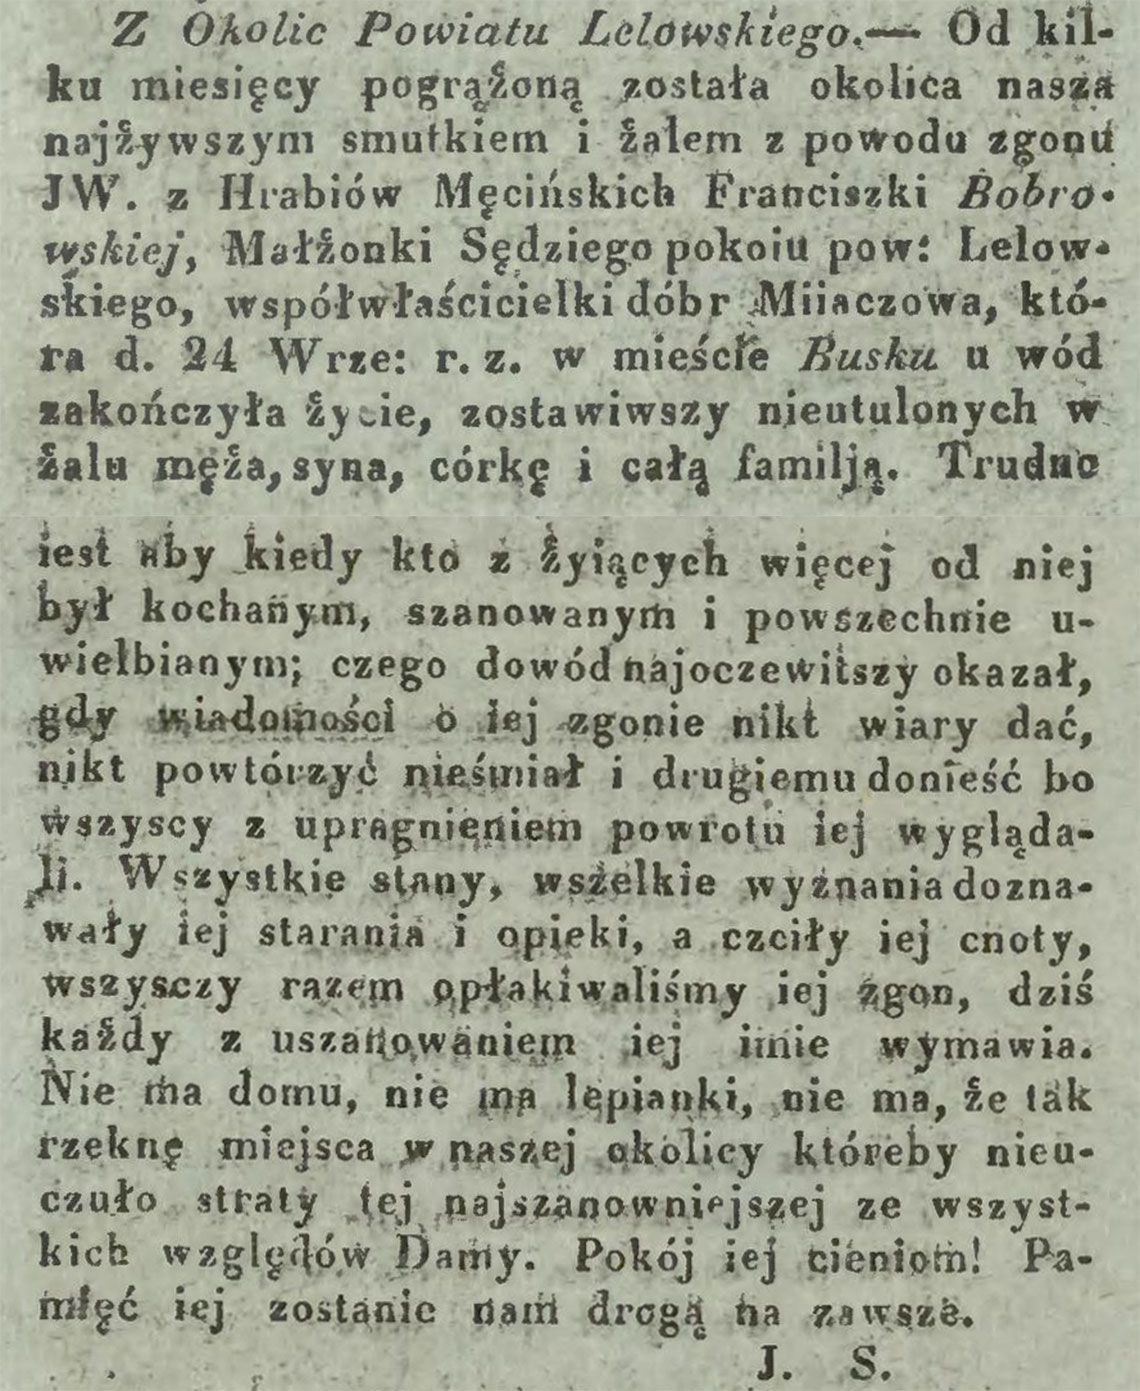 Nekrolog po śmierci Franciszka z hr. Męcińskich Bobrowska zm. 24.09.1835 r.